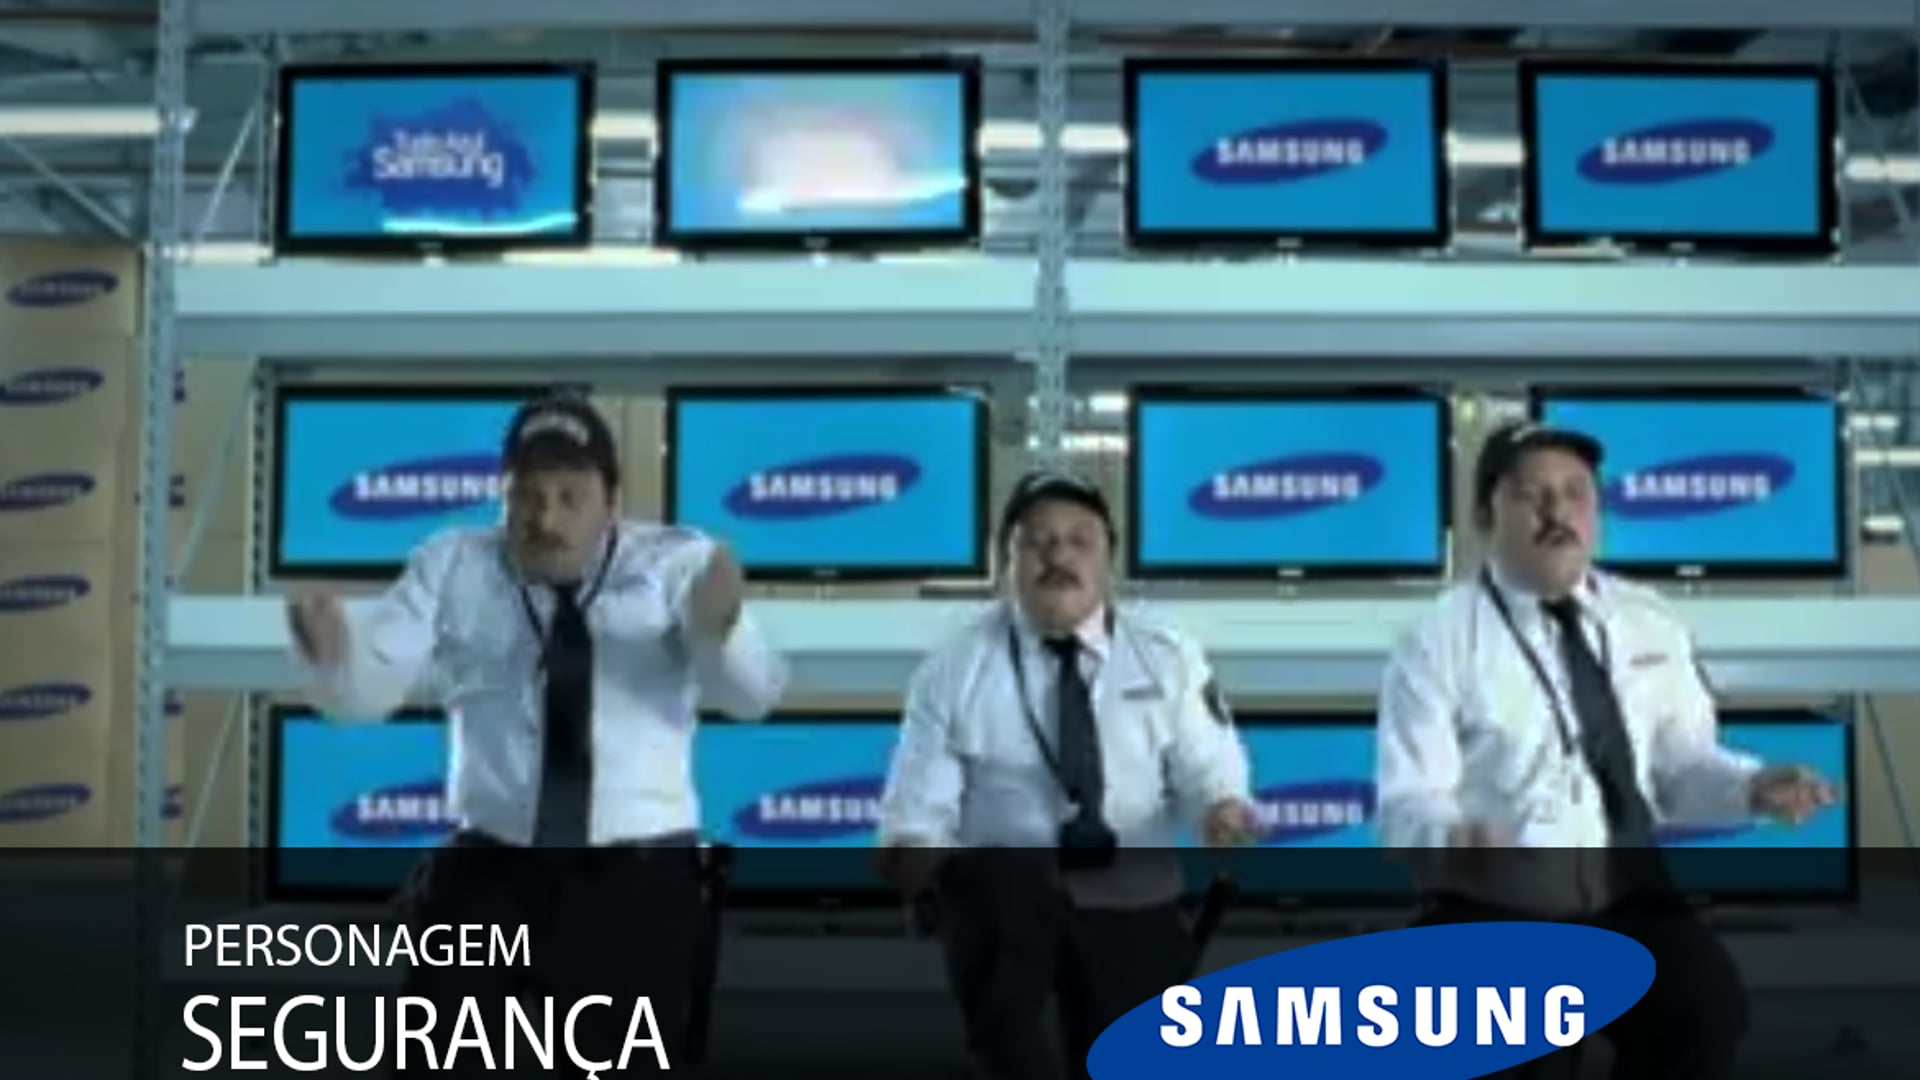 Hilton Castro - comercial "Samsung -  Semana Azul" personagem: Segurança